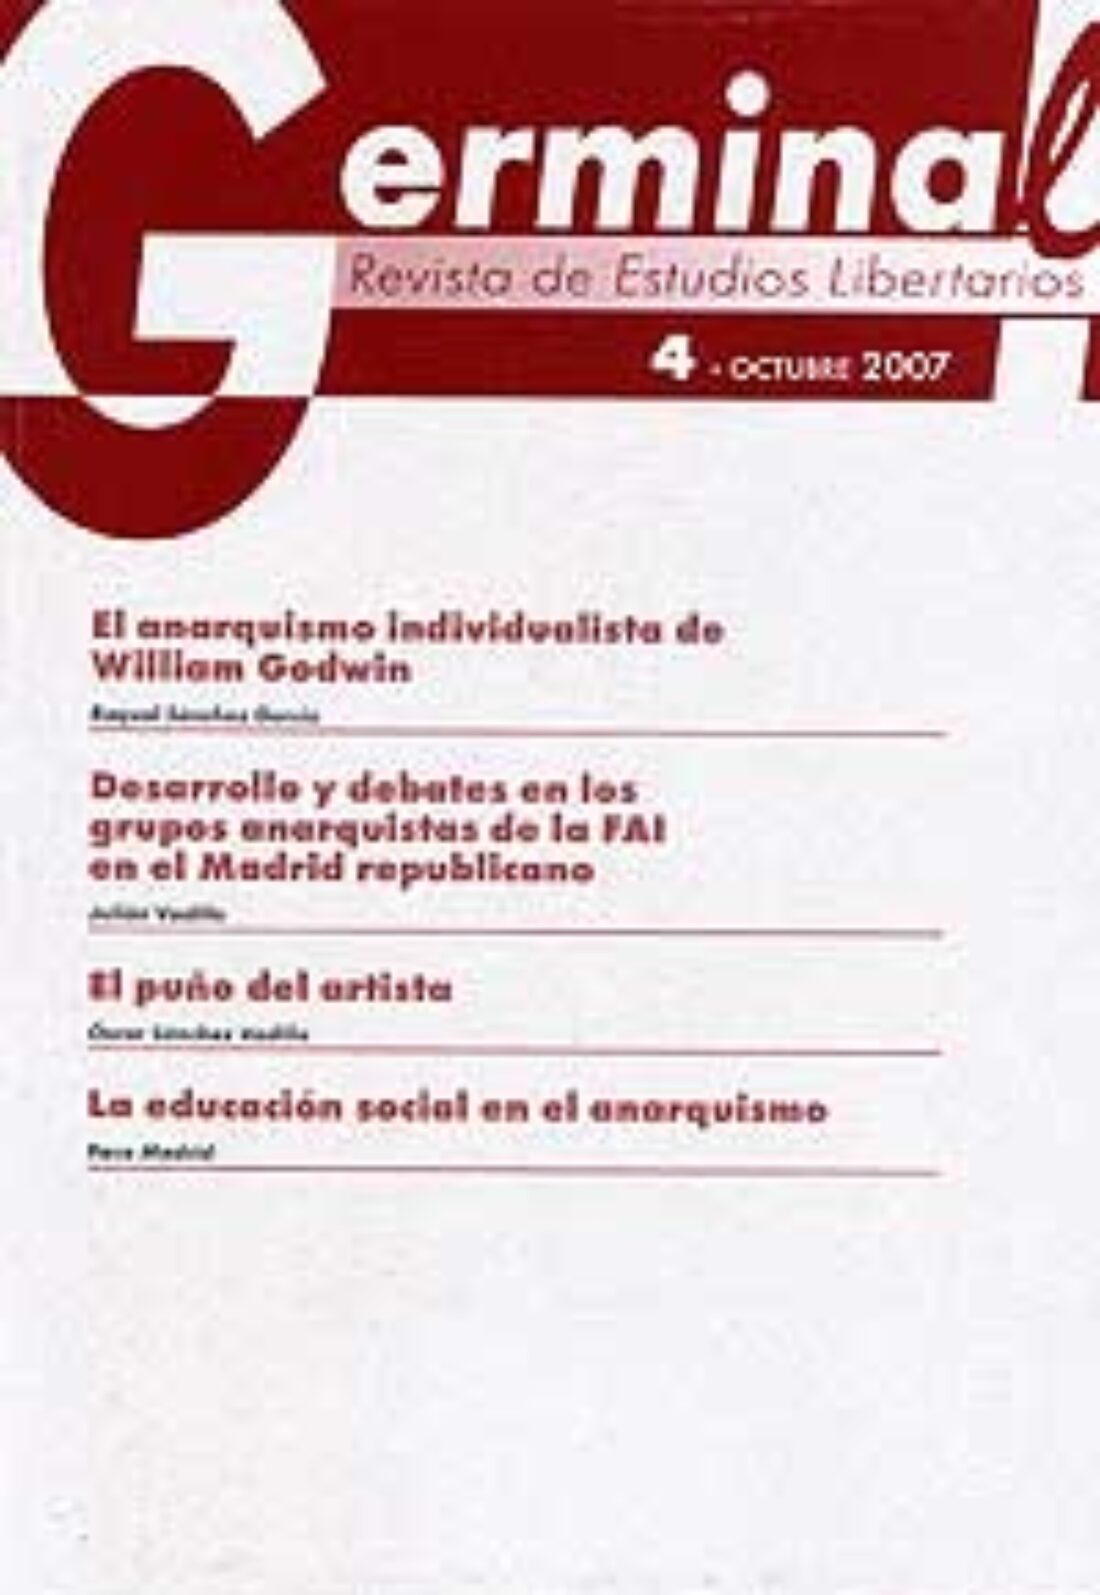 Germinal. Revista de Estudios Libertarios. Presentación del nuevo numero, el 5º